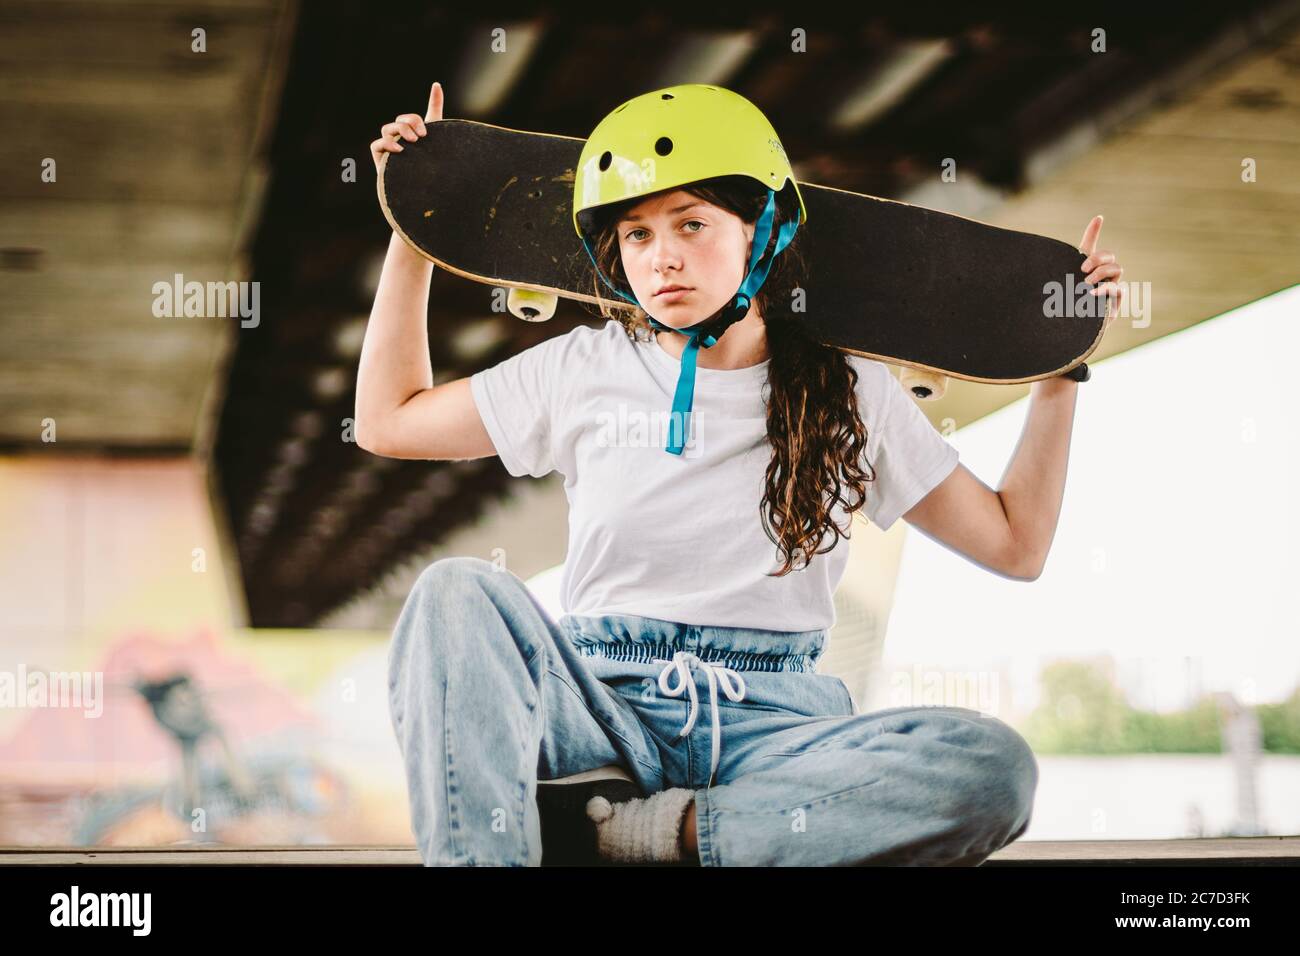 Niña adolescente en casco y ropa con estilo posando en la rampa de media pipa un parque patinaje al aire libre. Hermoso niño modelo skatboarder con tabla de skate en